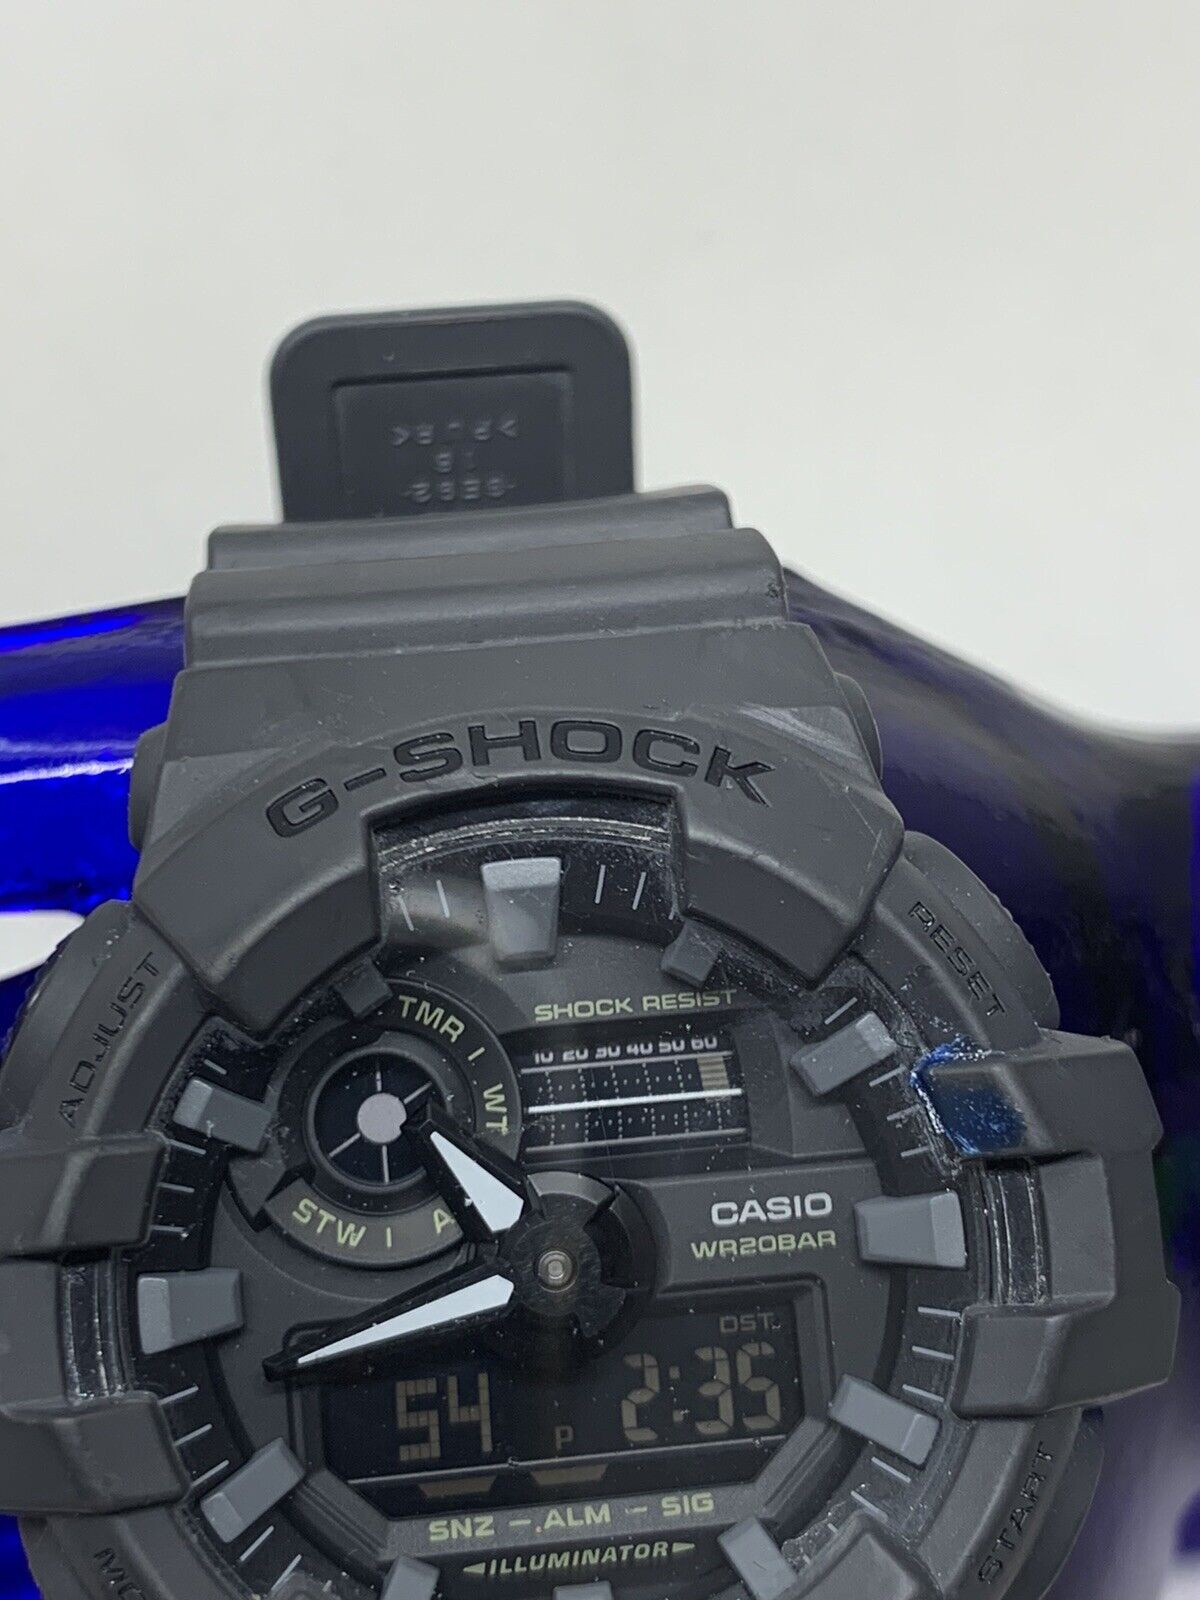 Casio G Shock WR20BAR Watch GA-700UC 5522 Grey | eBay